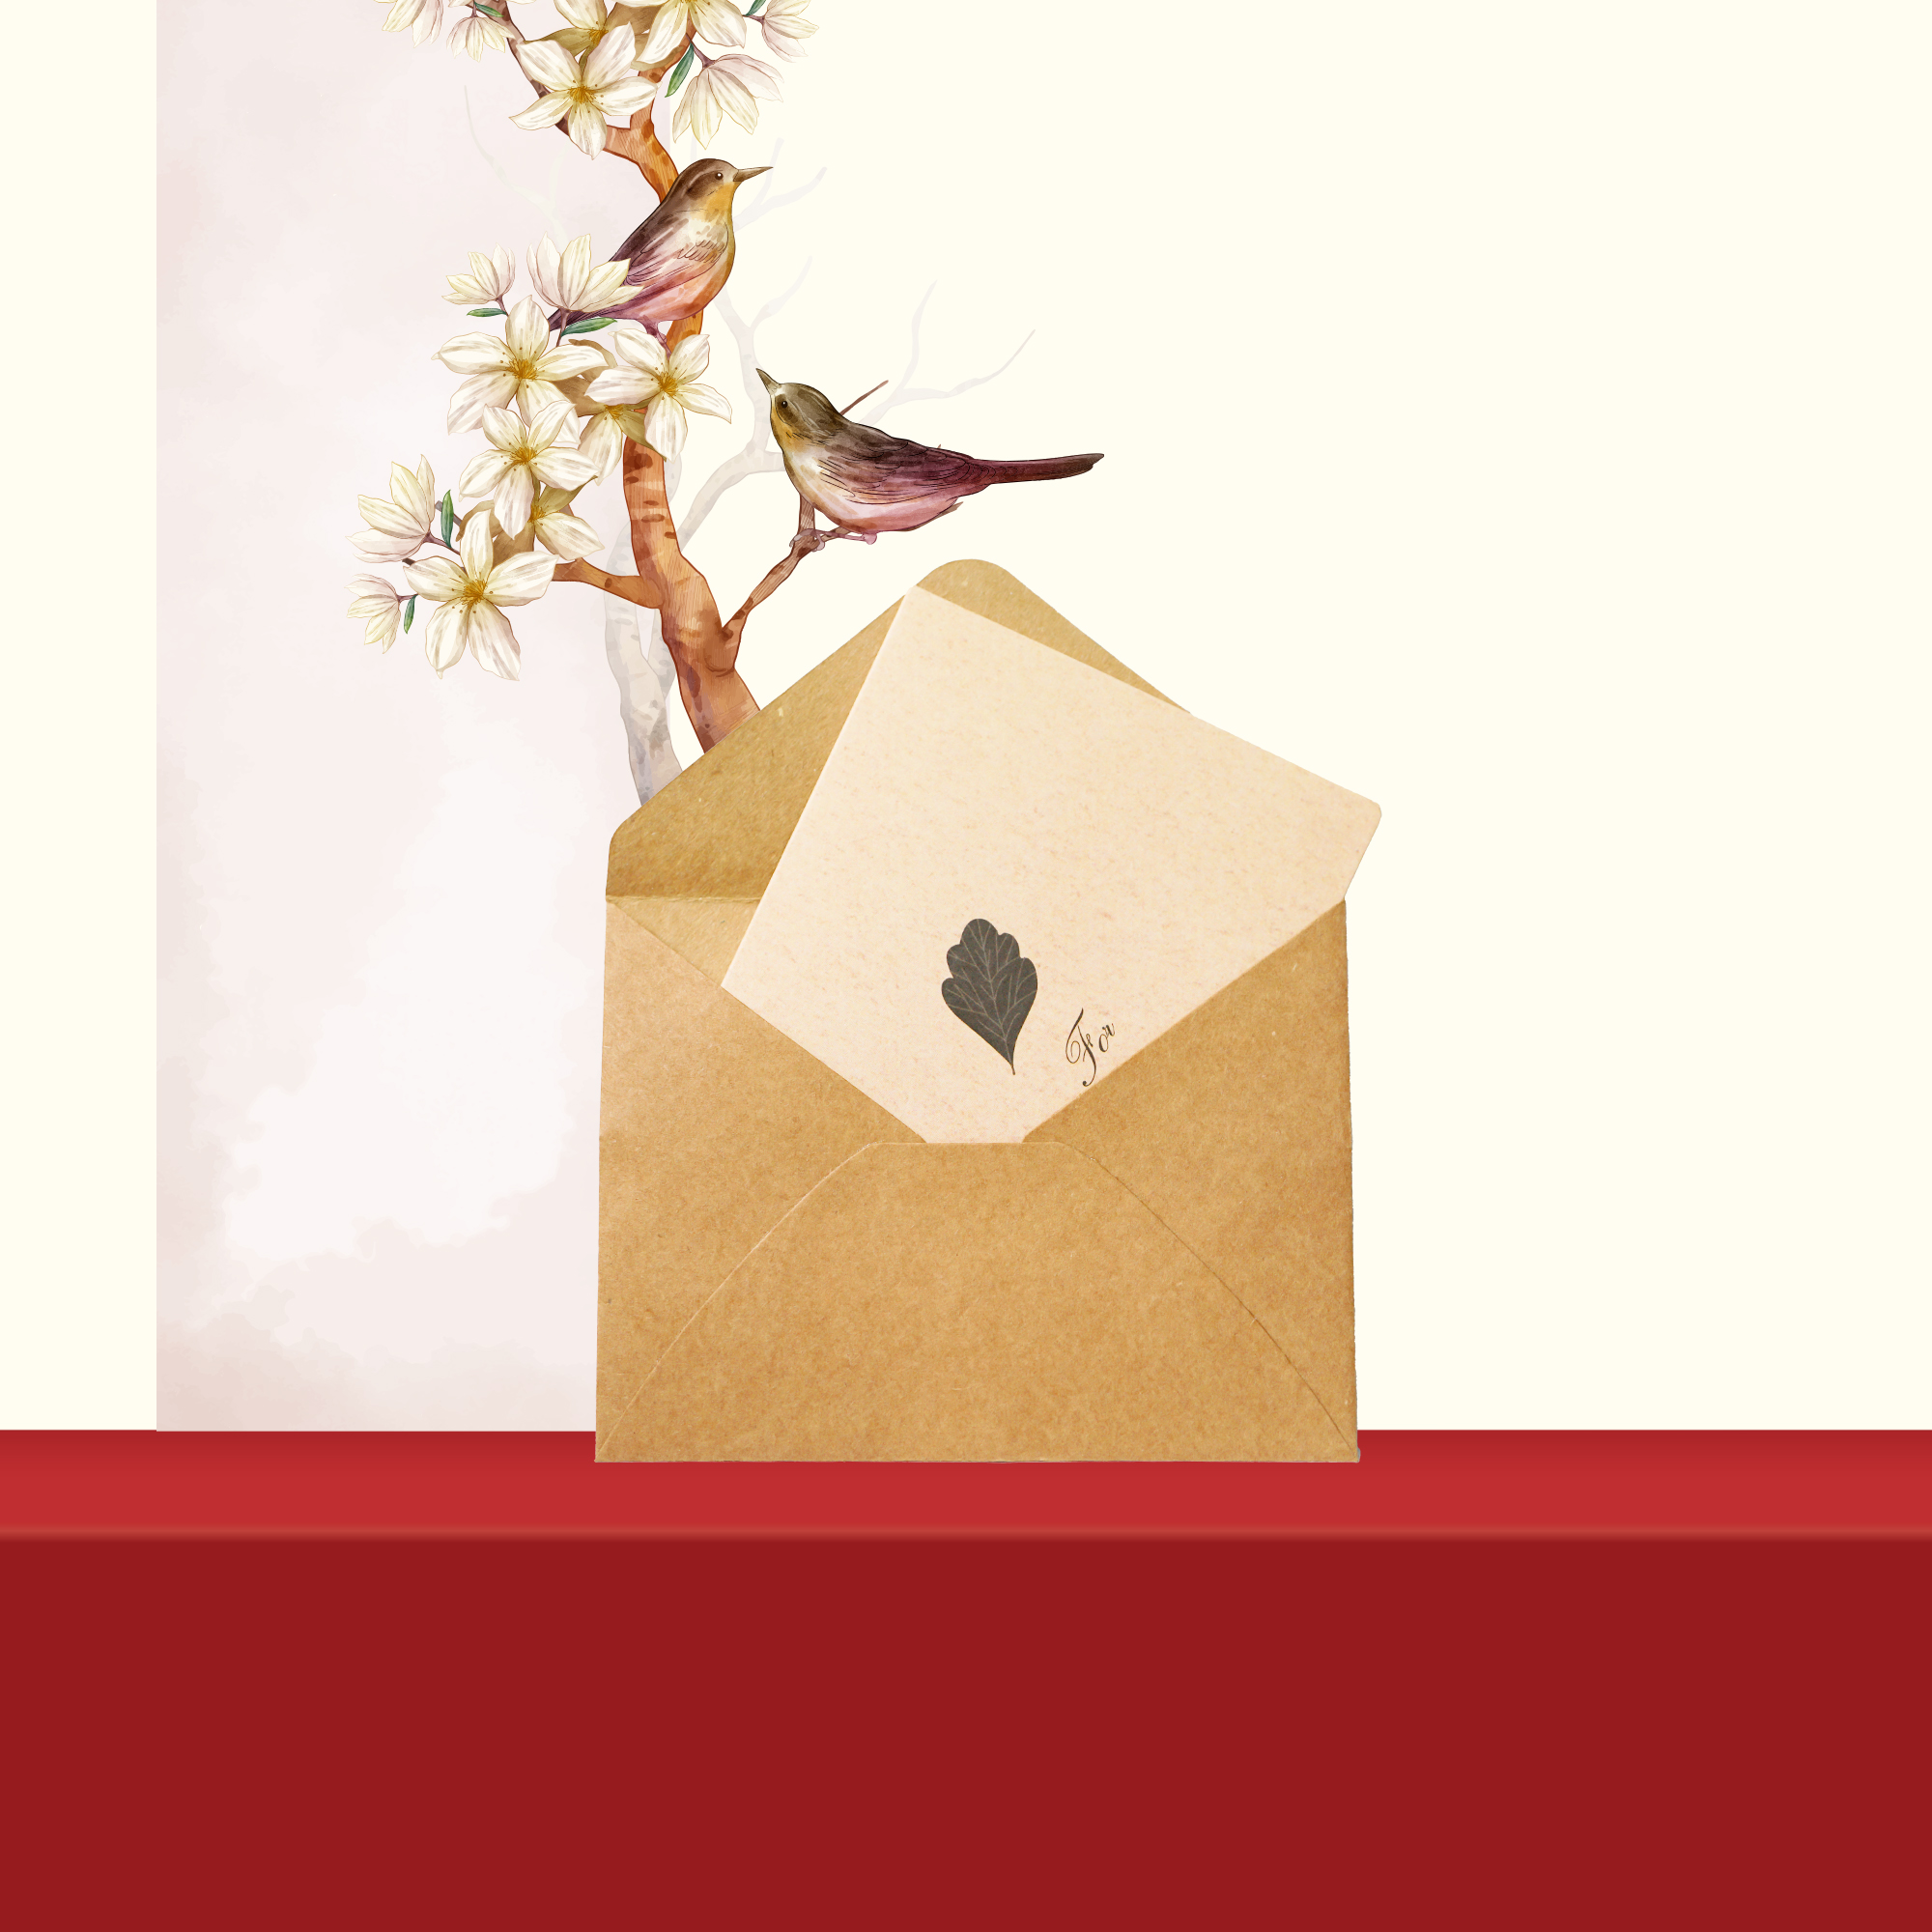 Set quà tặng, hộp quà tặng sâm mật ong saffron và táo đỏ / kỷ tử chính hãng Kingdom Herb (tặng kèm 1 que lấy mật + 1 bình thuỷ tinh + 1 thiệp chúc + 1 túi giấy)